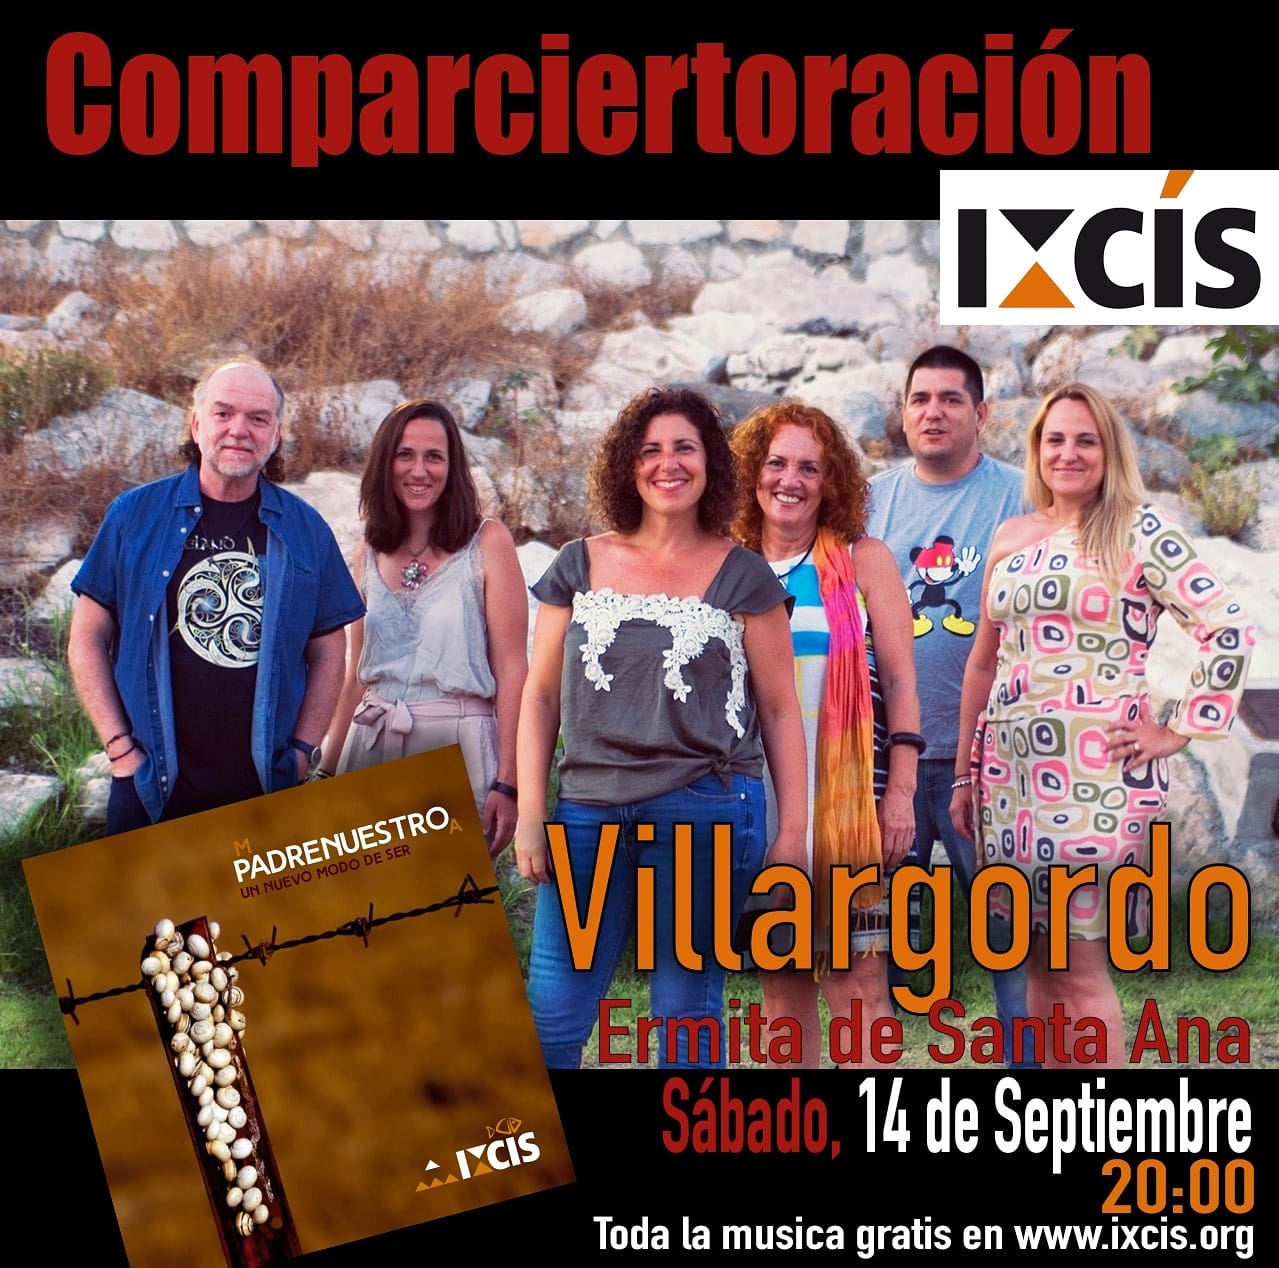 Comparciertoración a cargo del grupo IXCIS en Villargordo